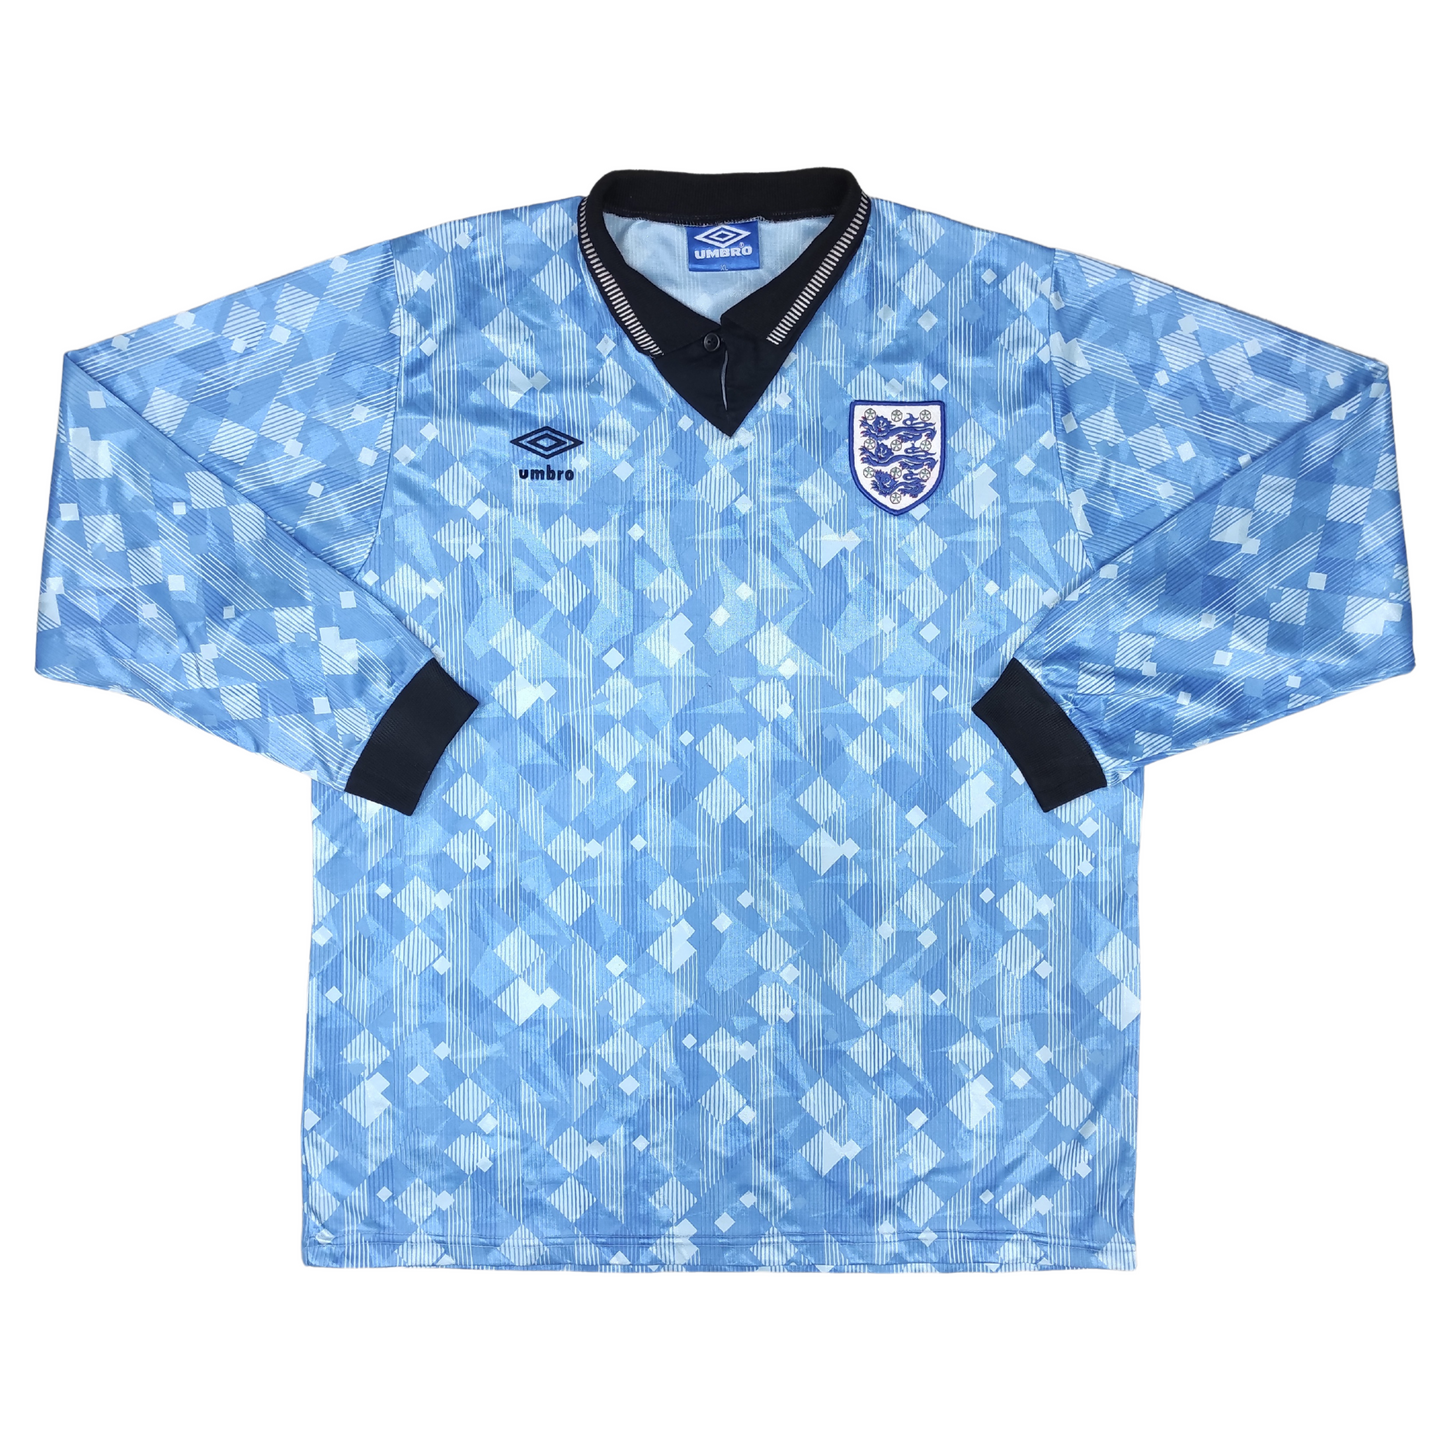 England Third L/S Shirt 1990-1992 (XL)